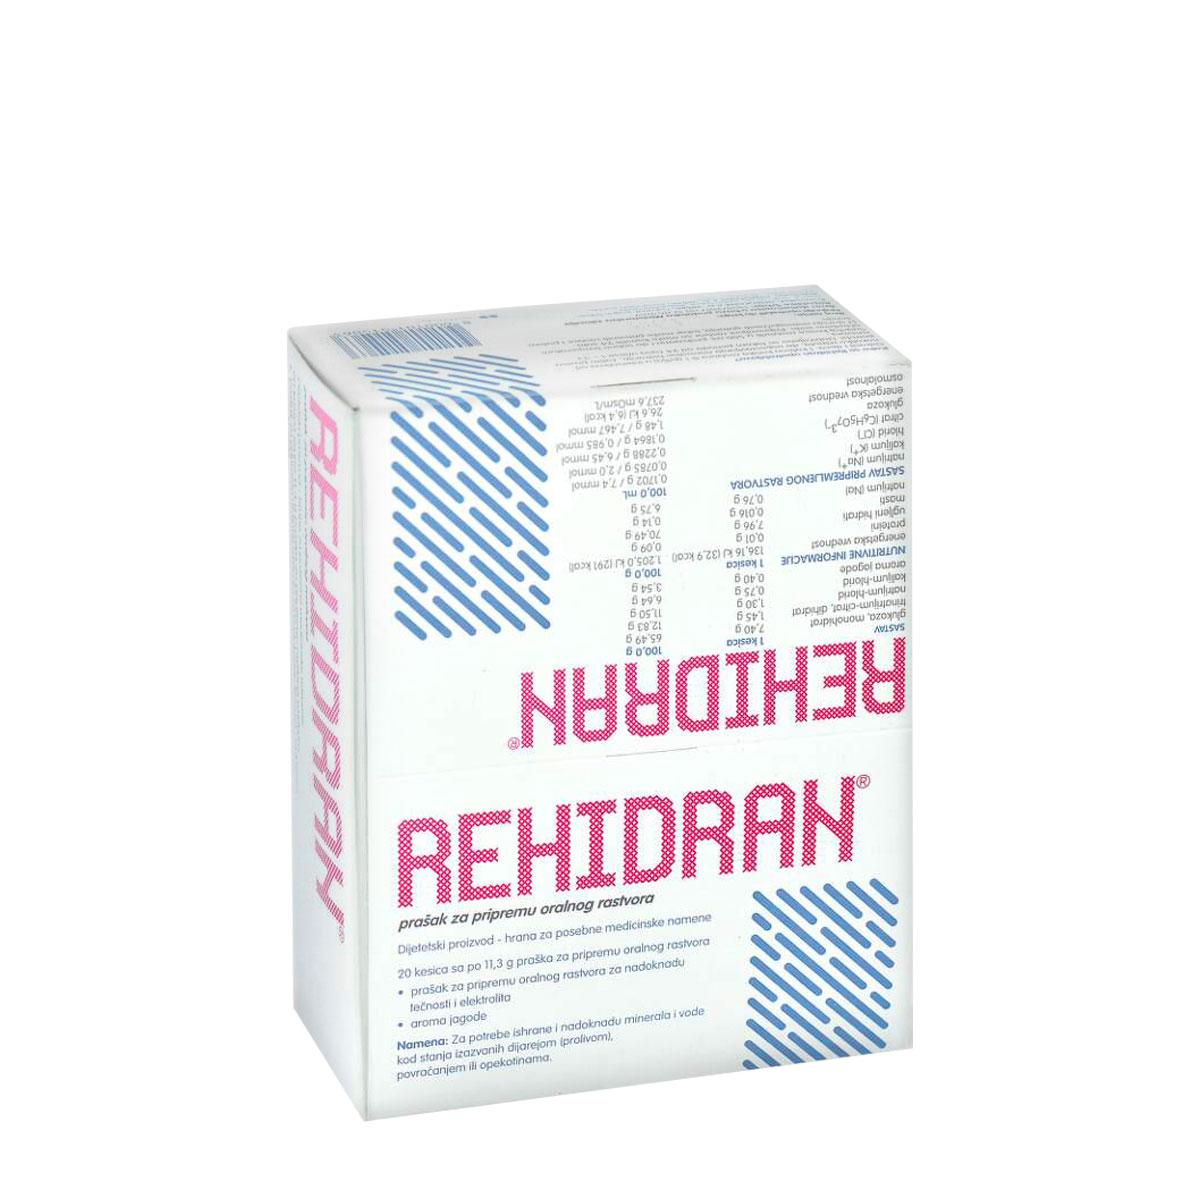 Selected image for HEMOFARM Rehidran 20/1